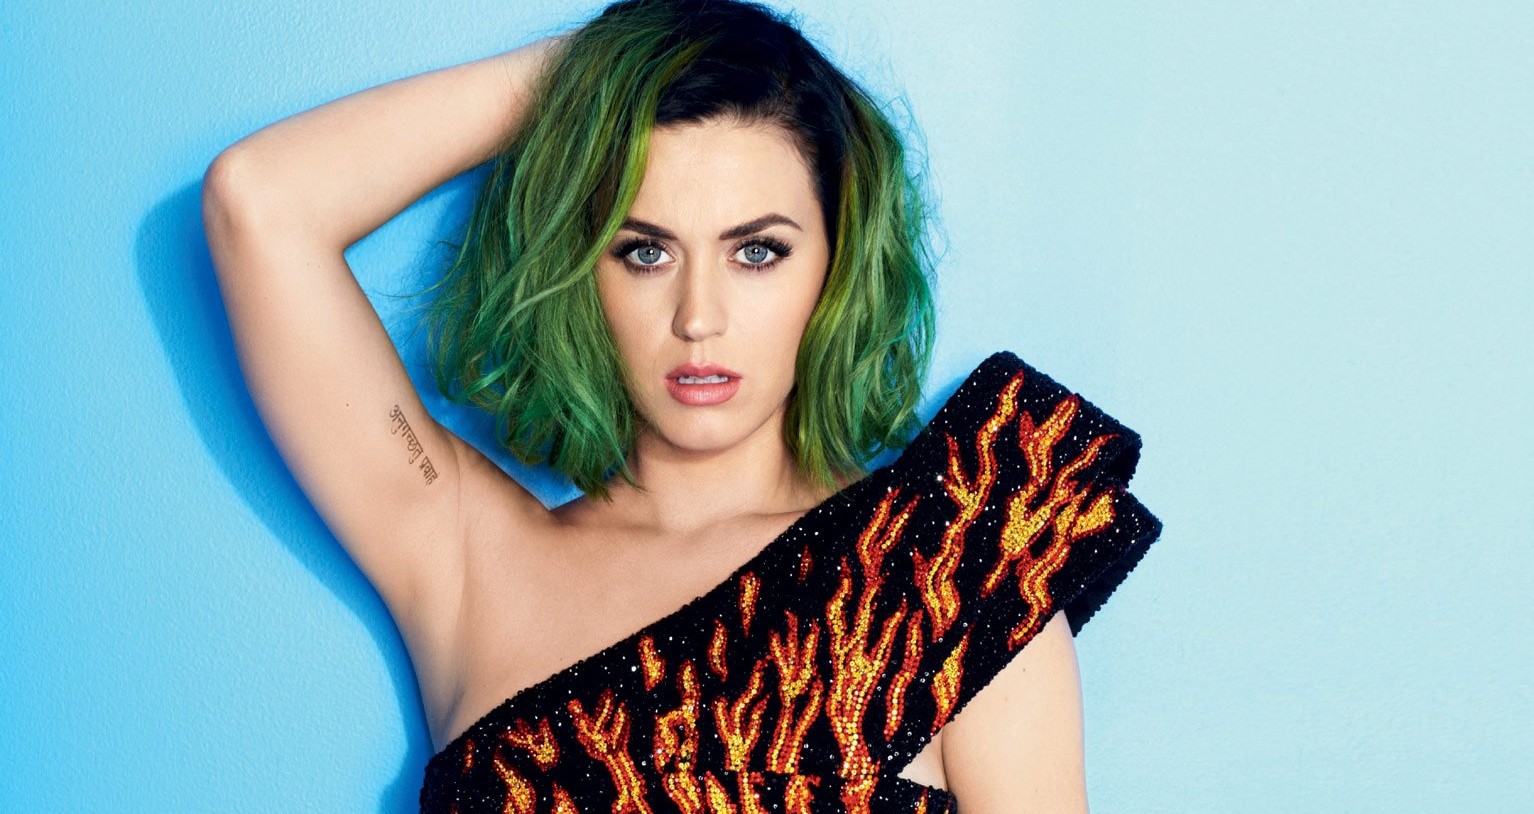 Újra a szinglik táborát erősíti Katy Perry